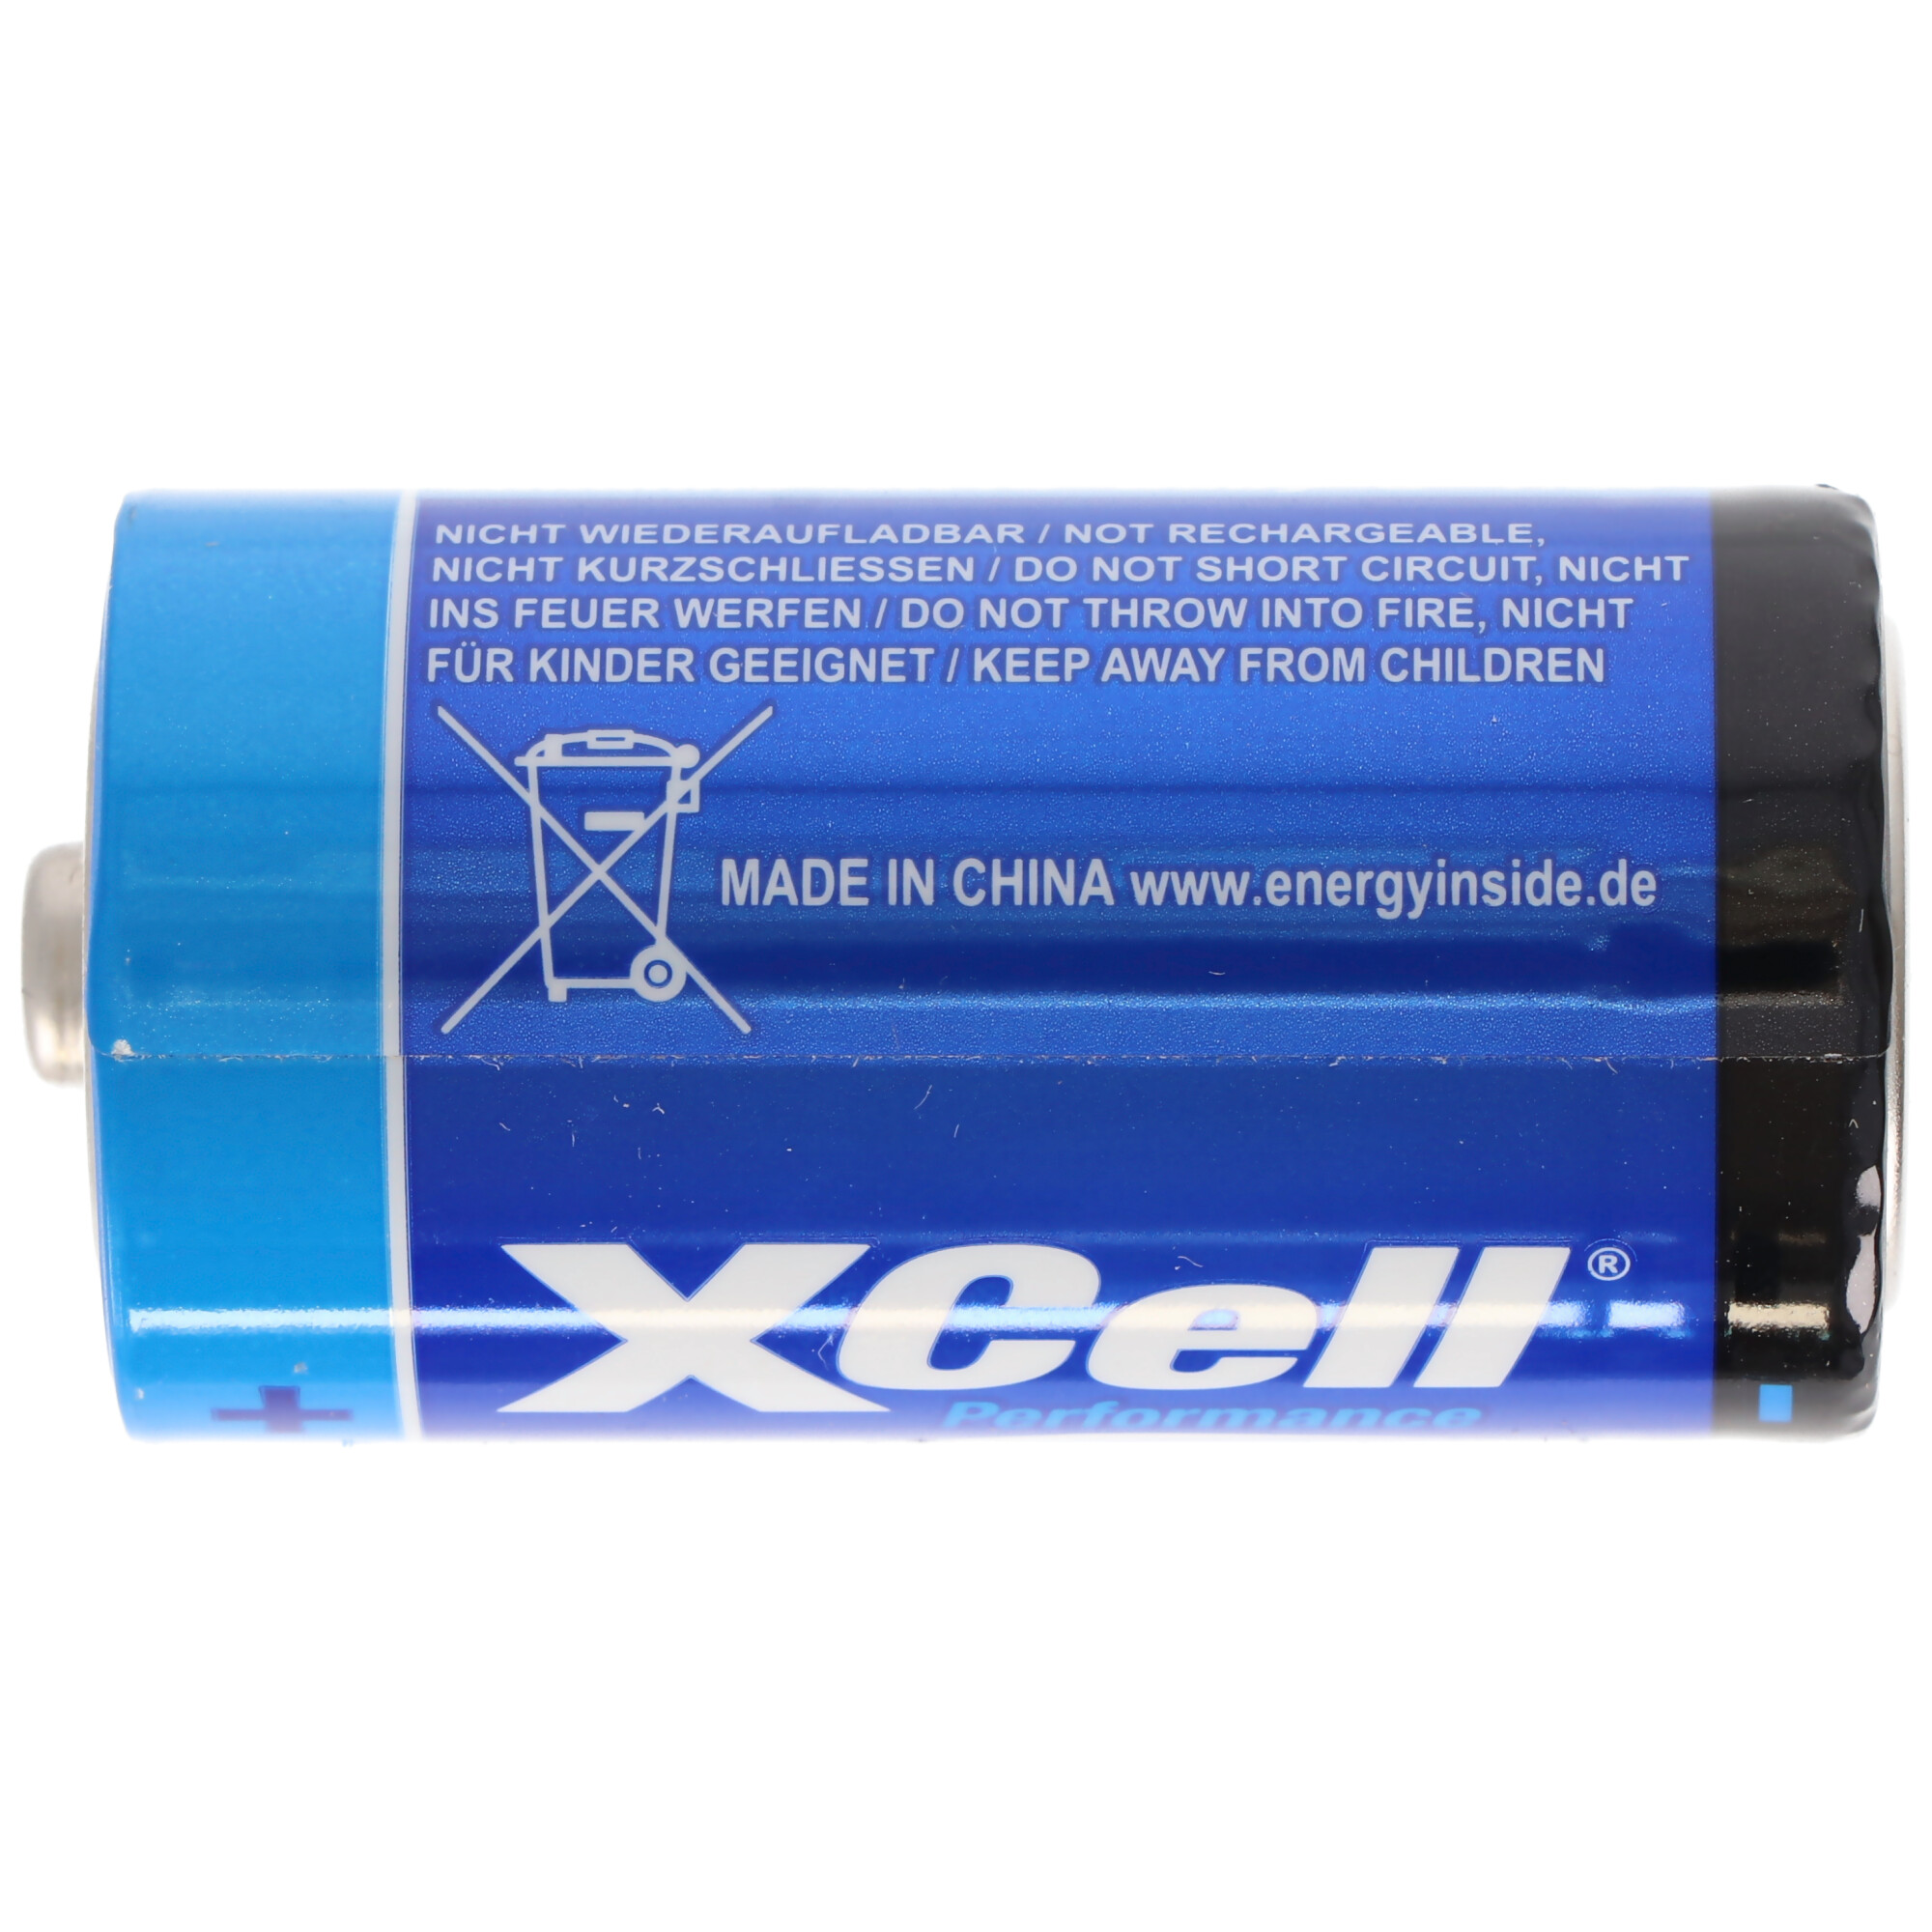 XCell Batterie Alkaline Baby, C, LR14, umweltfreundliche Verpackung, 1.5V, 2er Blister